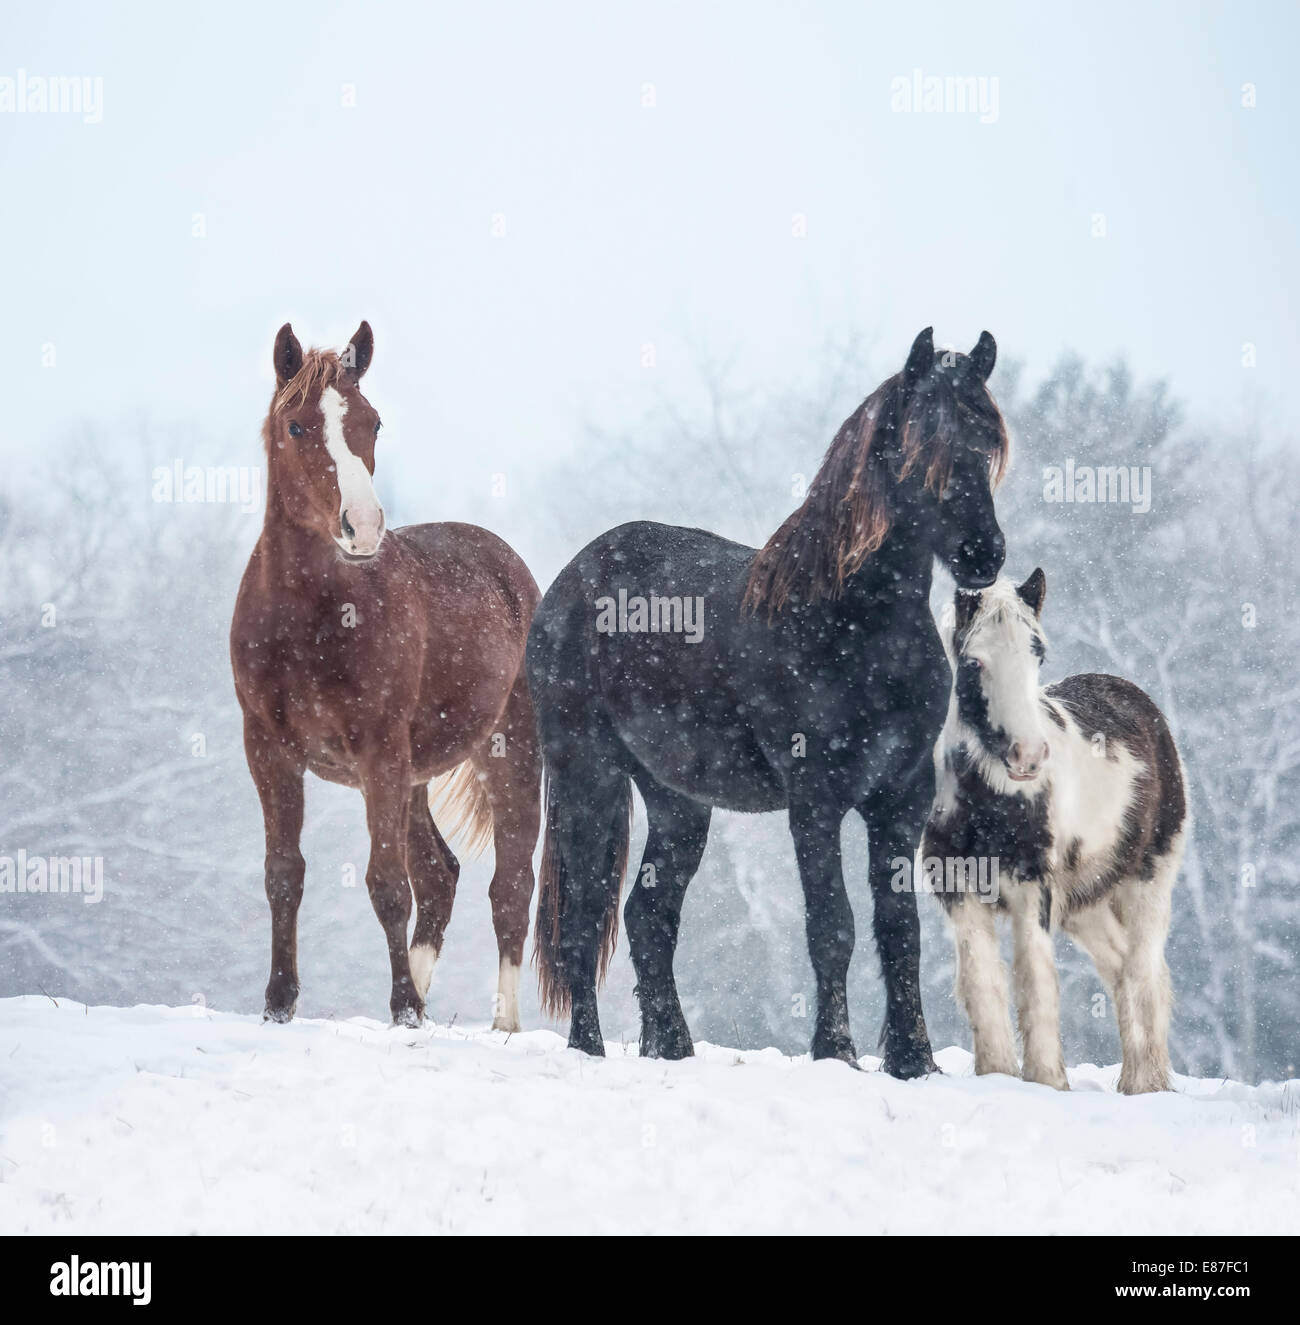 Il frisone, Warmblood Zingaro e degli animali appena svezzati di cavallo nella neve Foto Stock